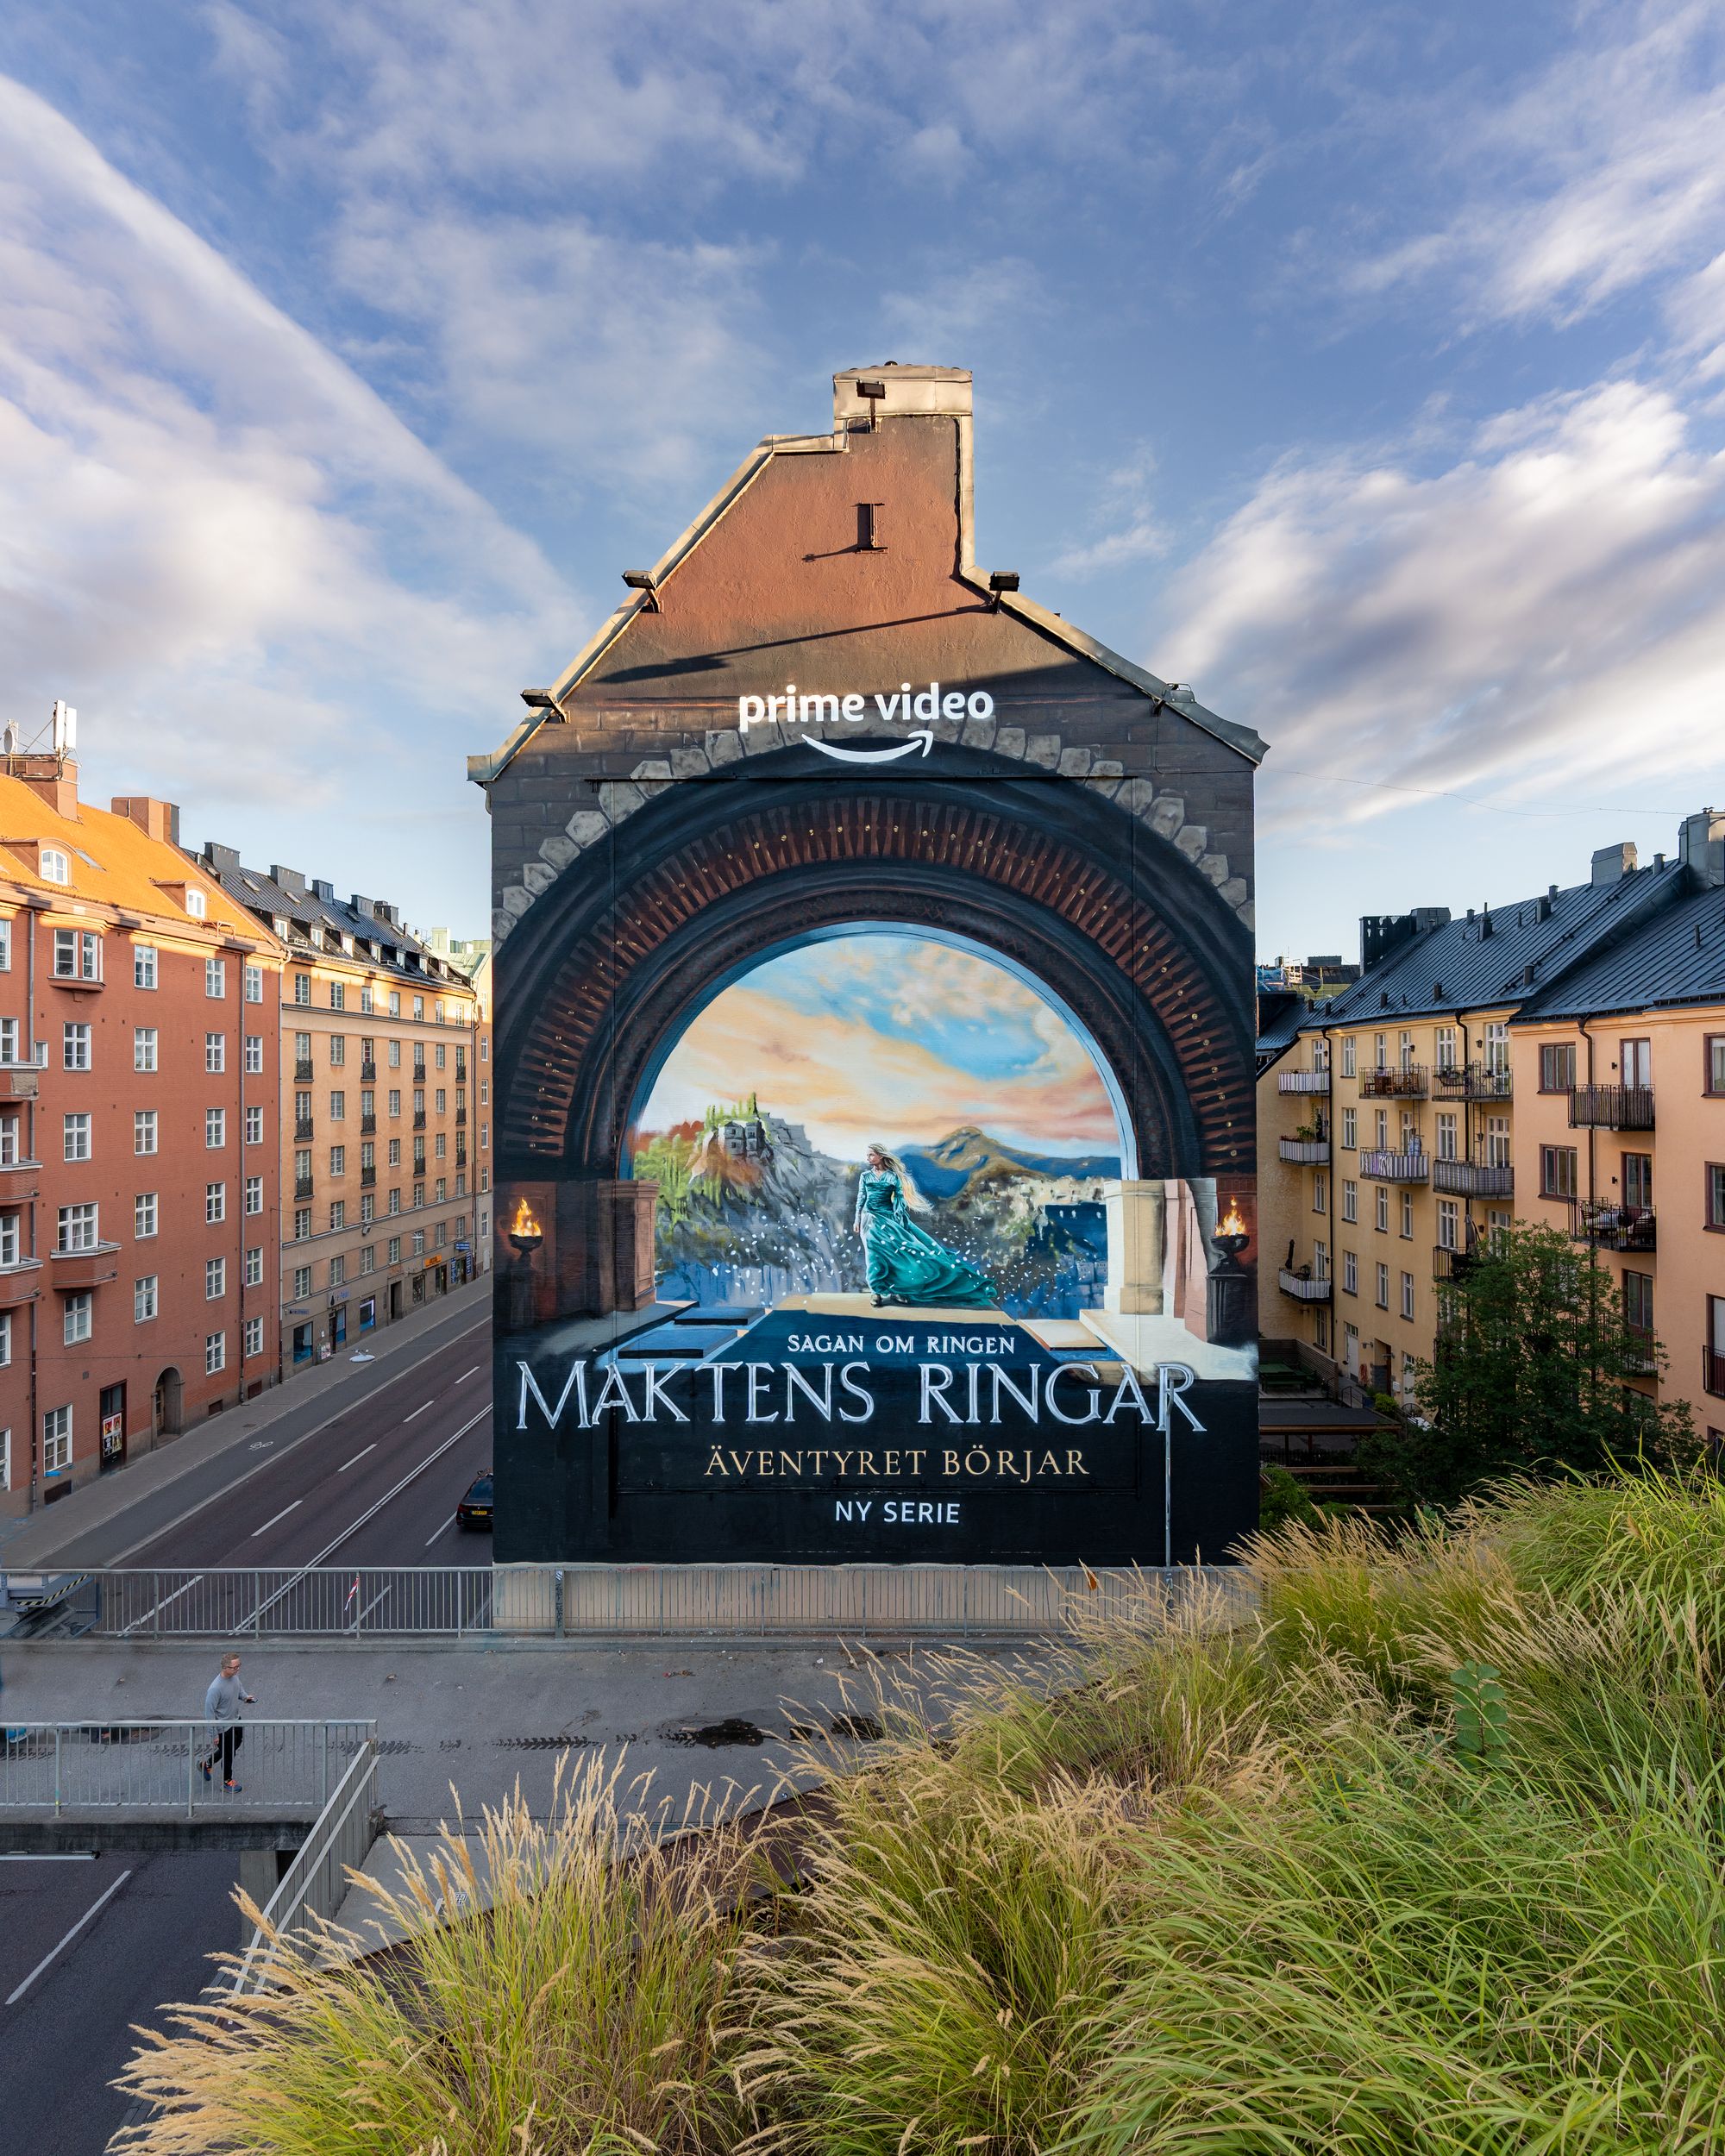 Nordic Murals: “Våra målningar minskar glappet mellan konstnärligt och kommersiellt”